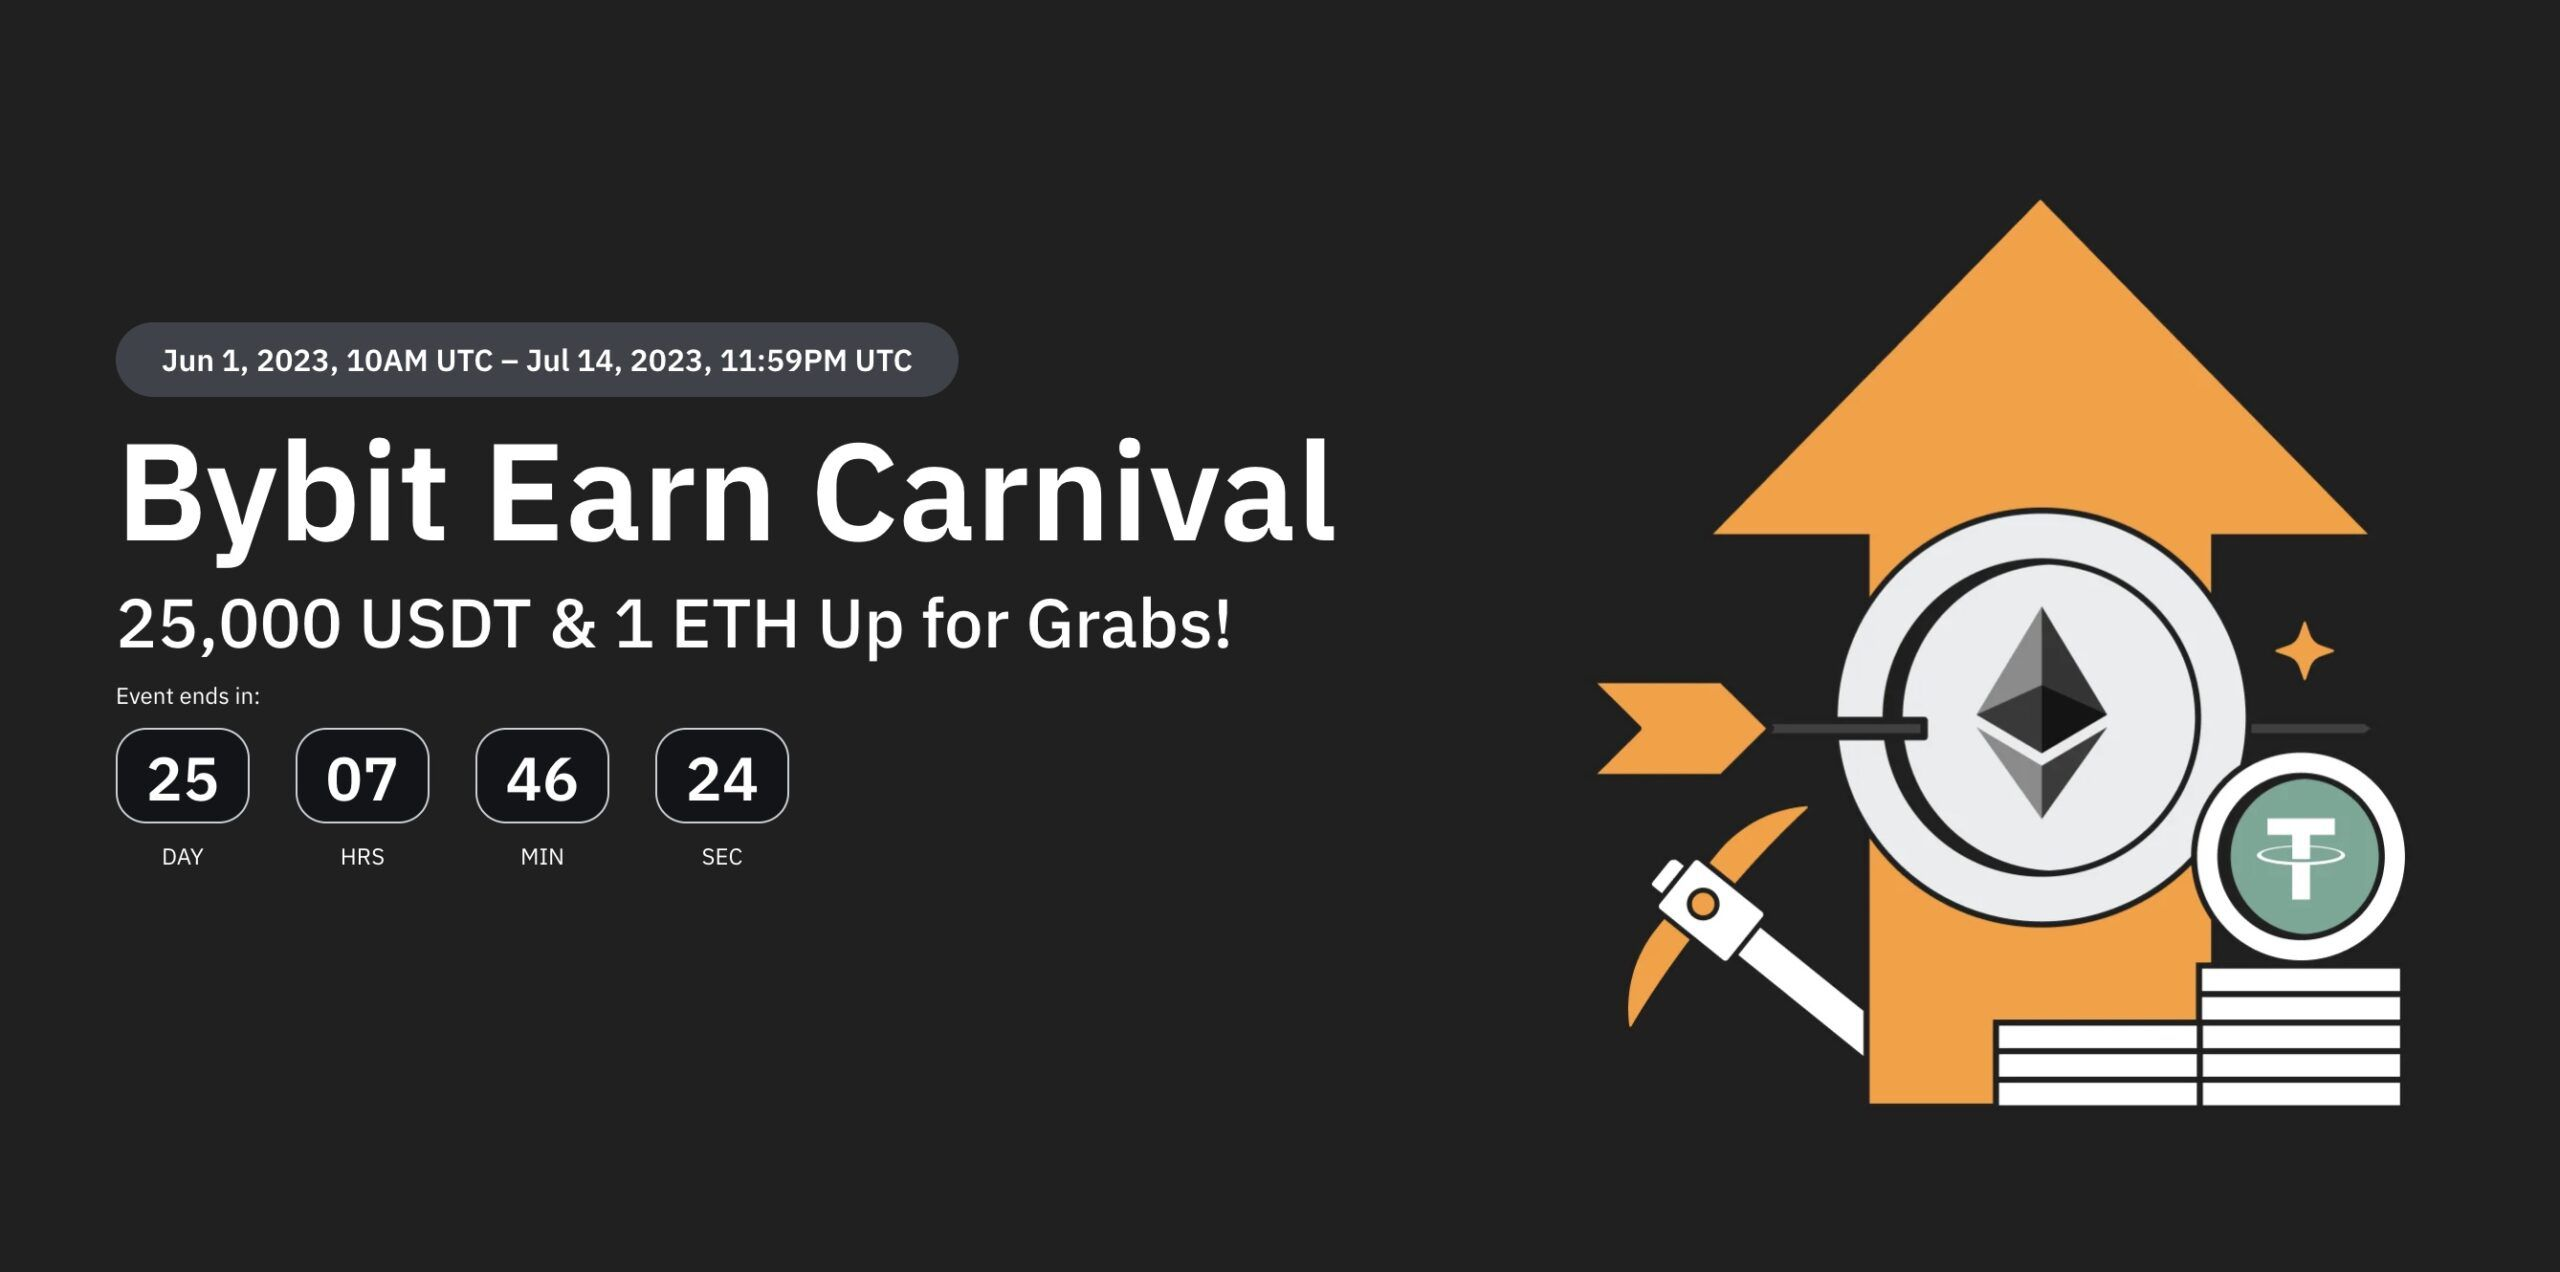 9. Bybit | Earn Carnival